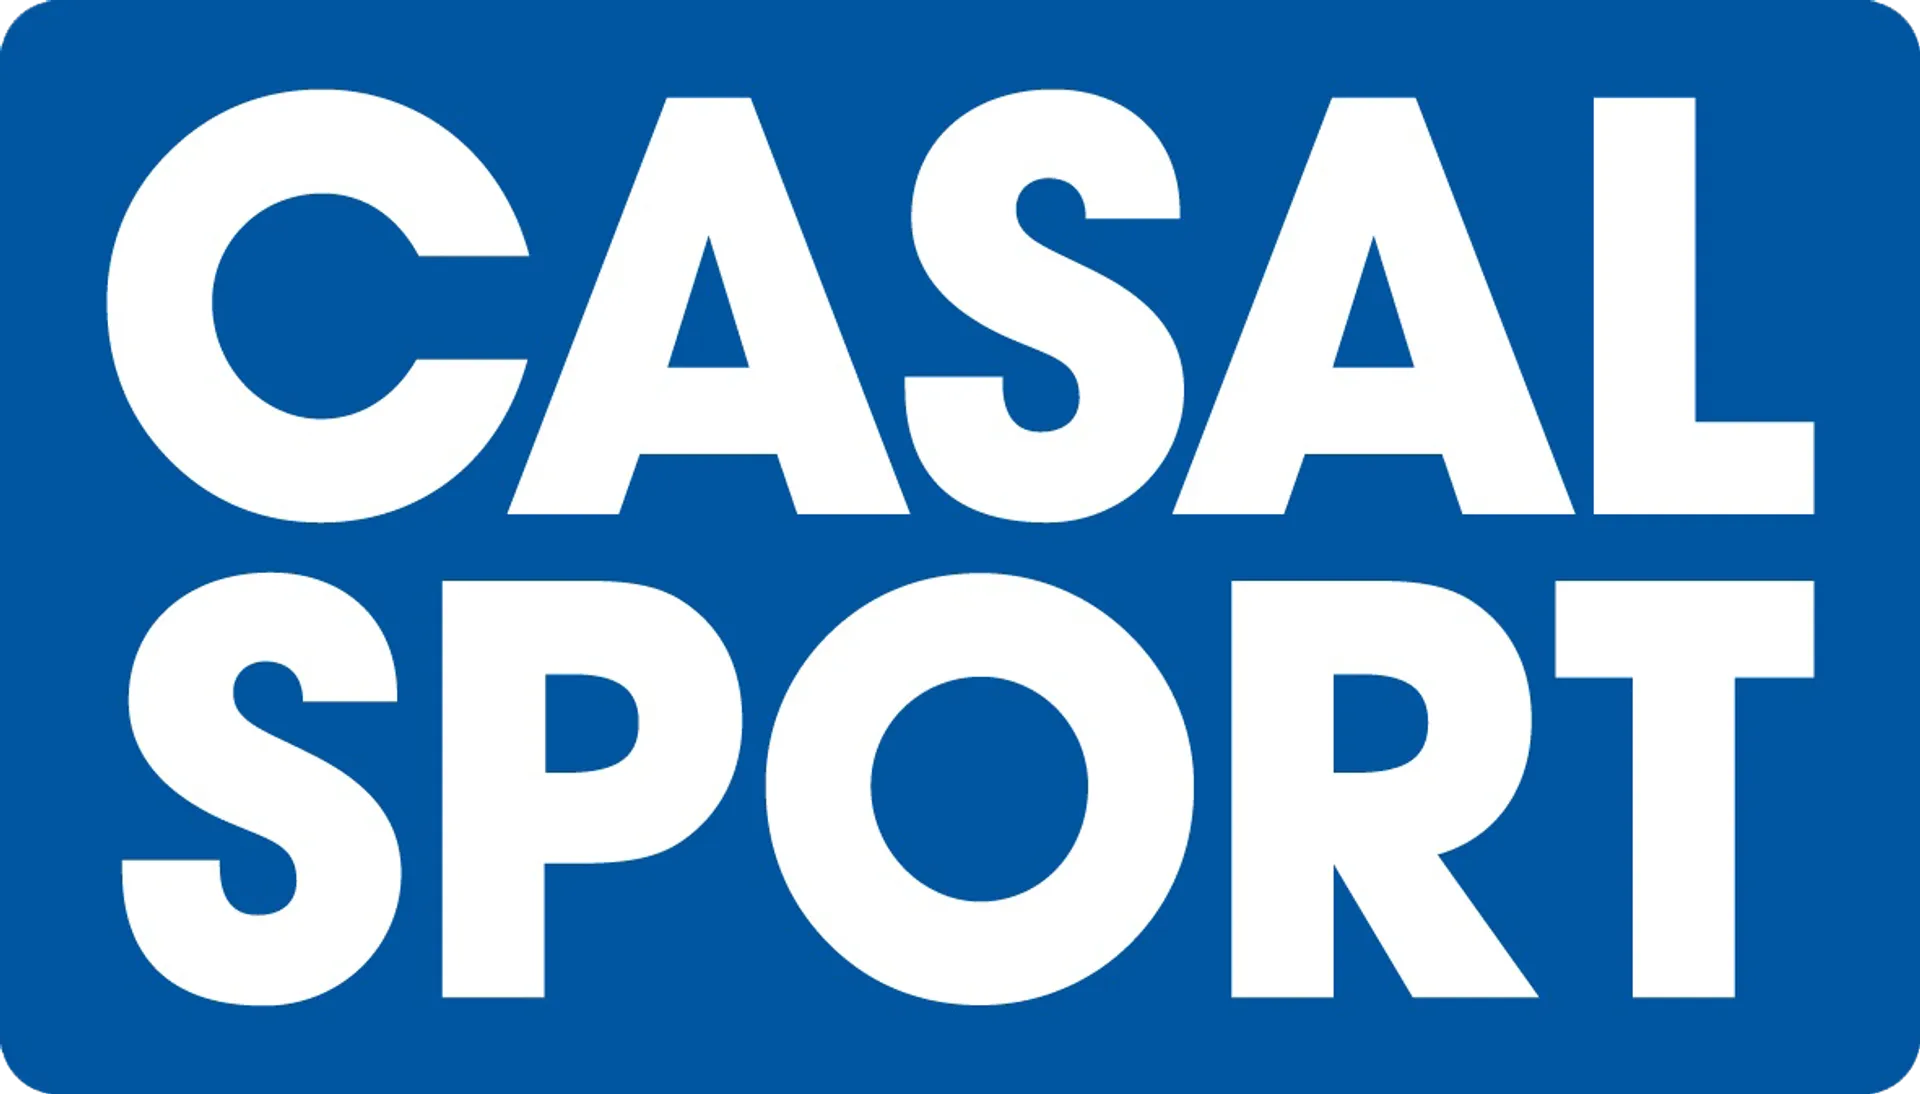 CASAL SPORT logo